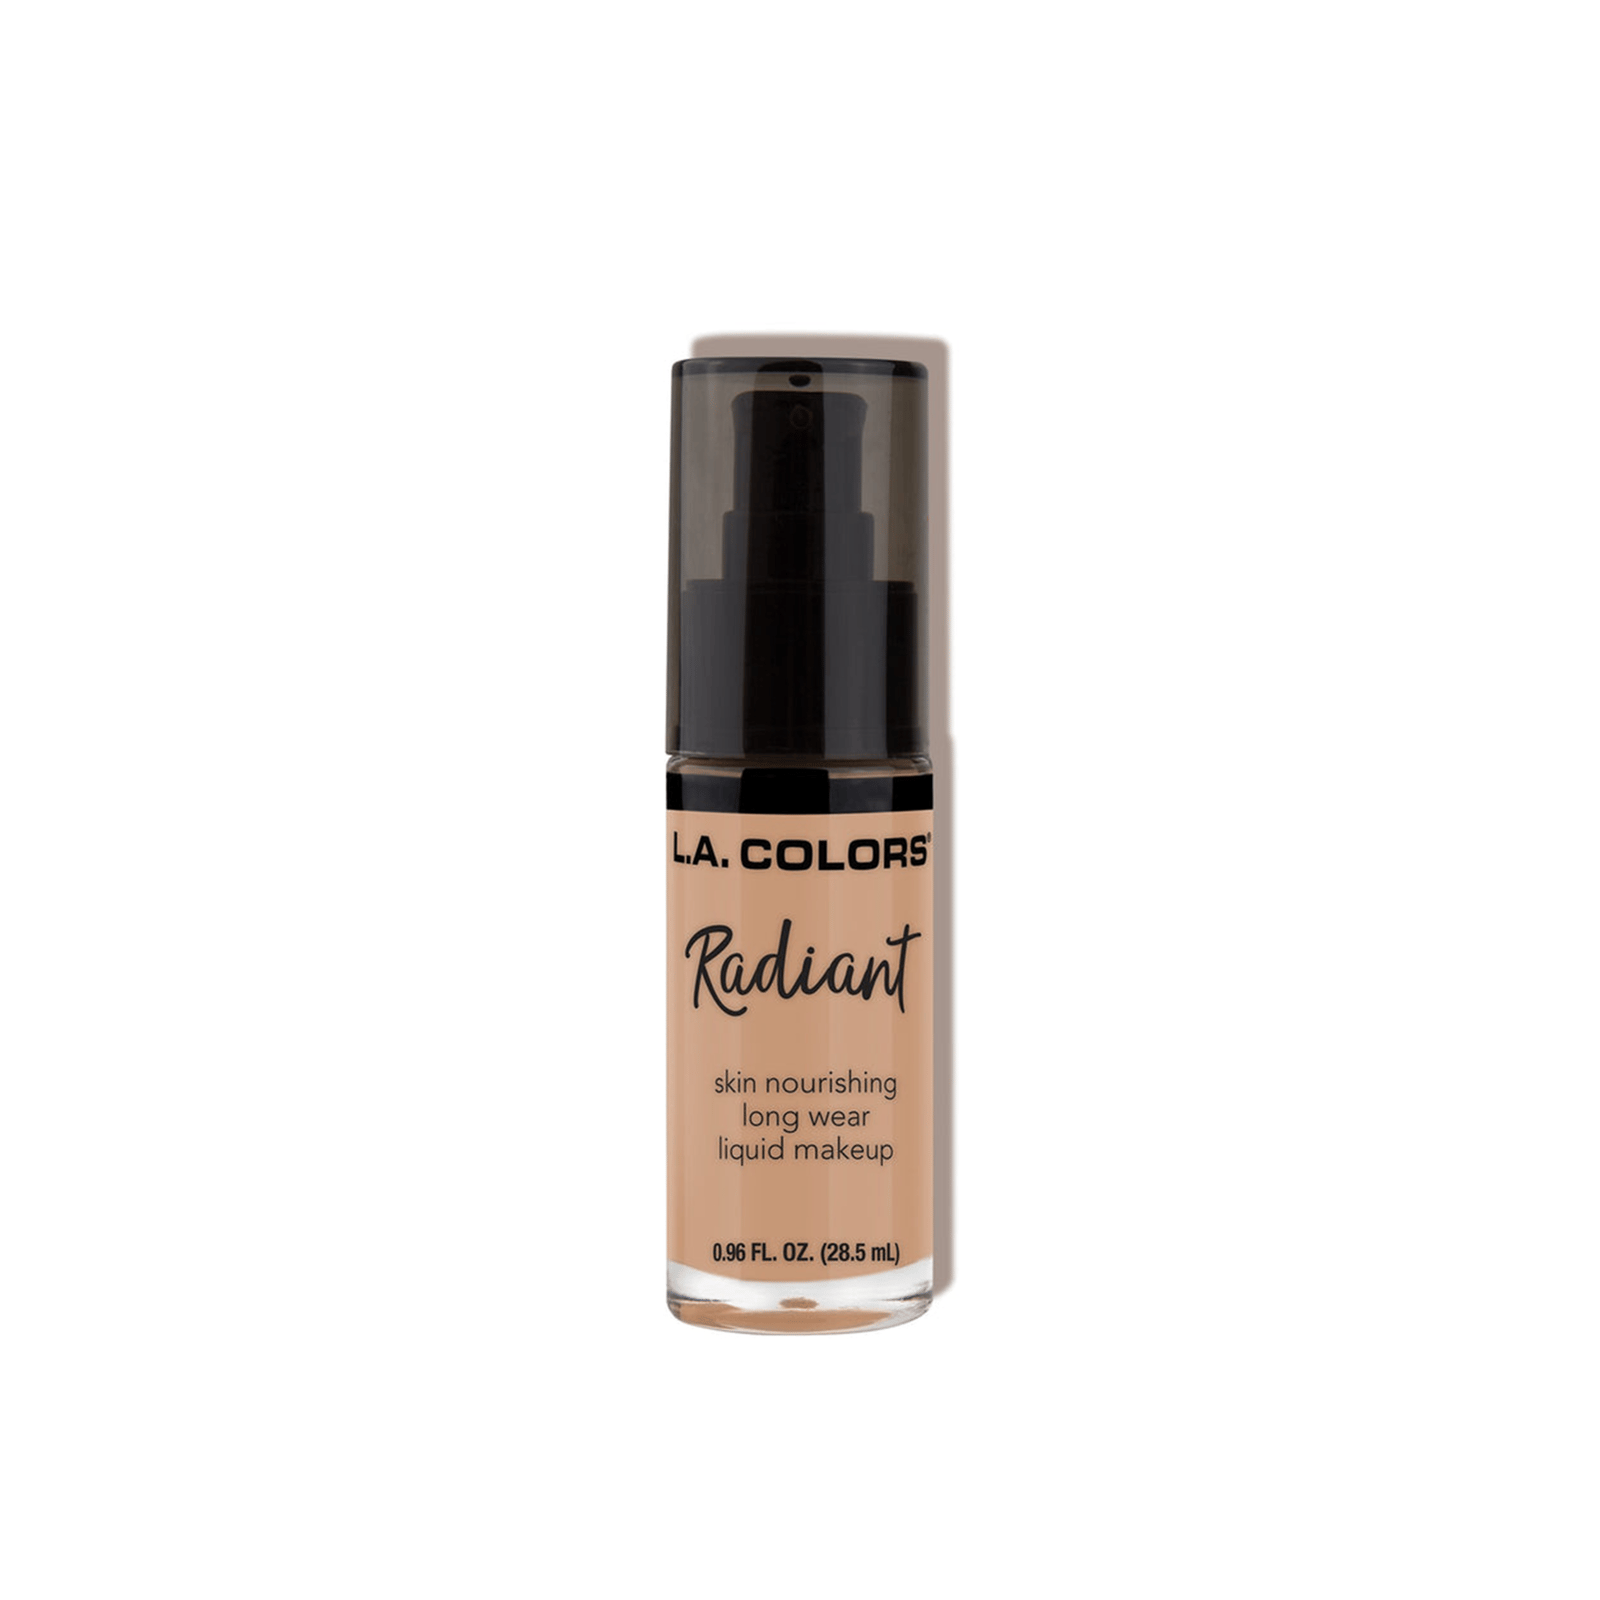 L.A. Colors Radiant Liquid Makeup Foundation CLM392 Medium Tan 28.5ml (0.96 fl oz)